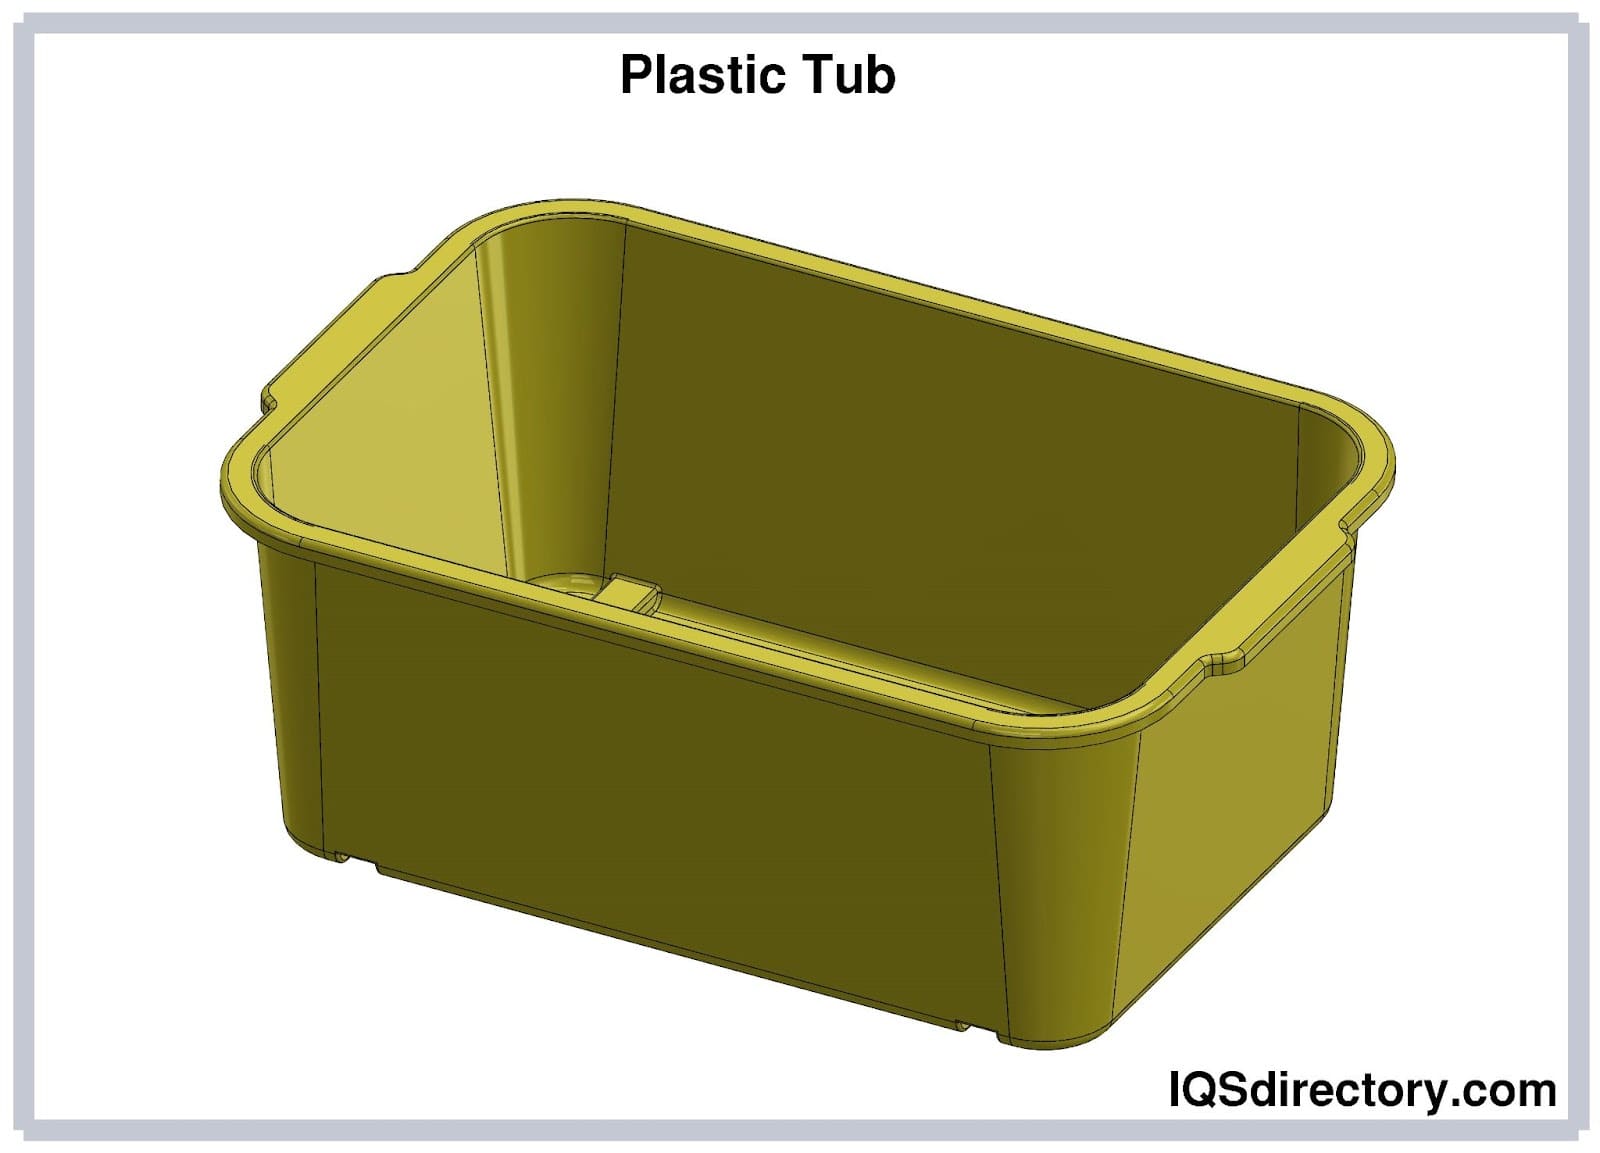 Plastic Tub Manufacturers